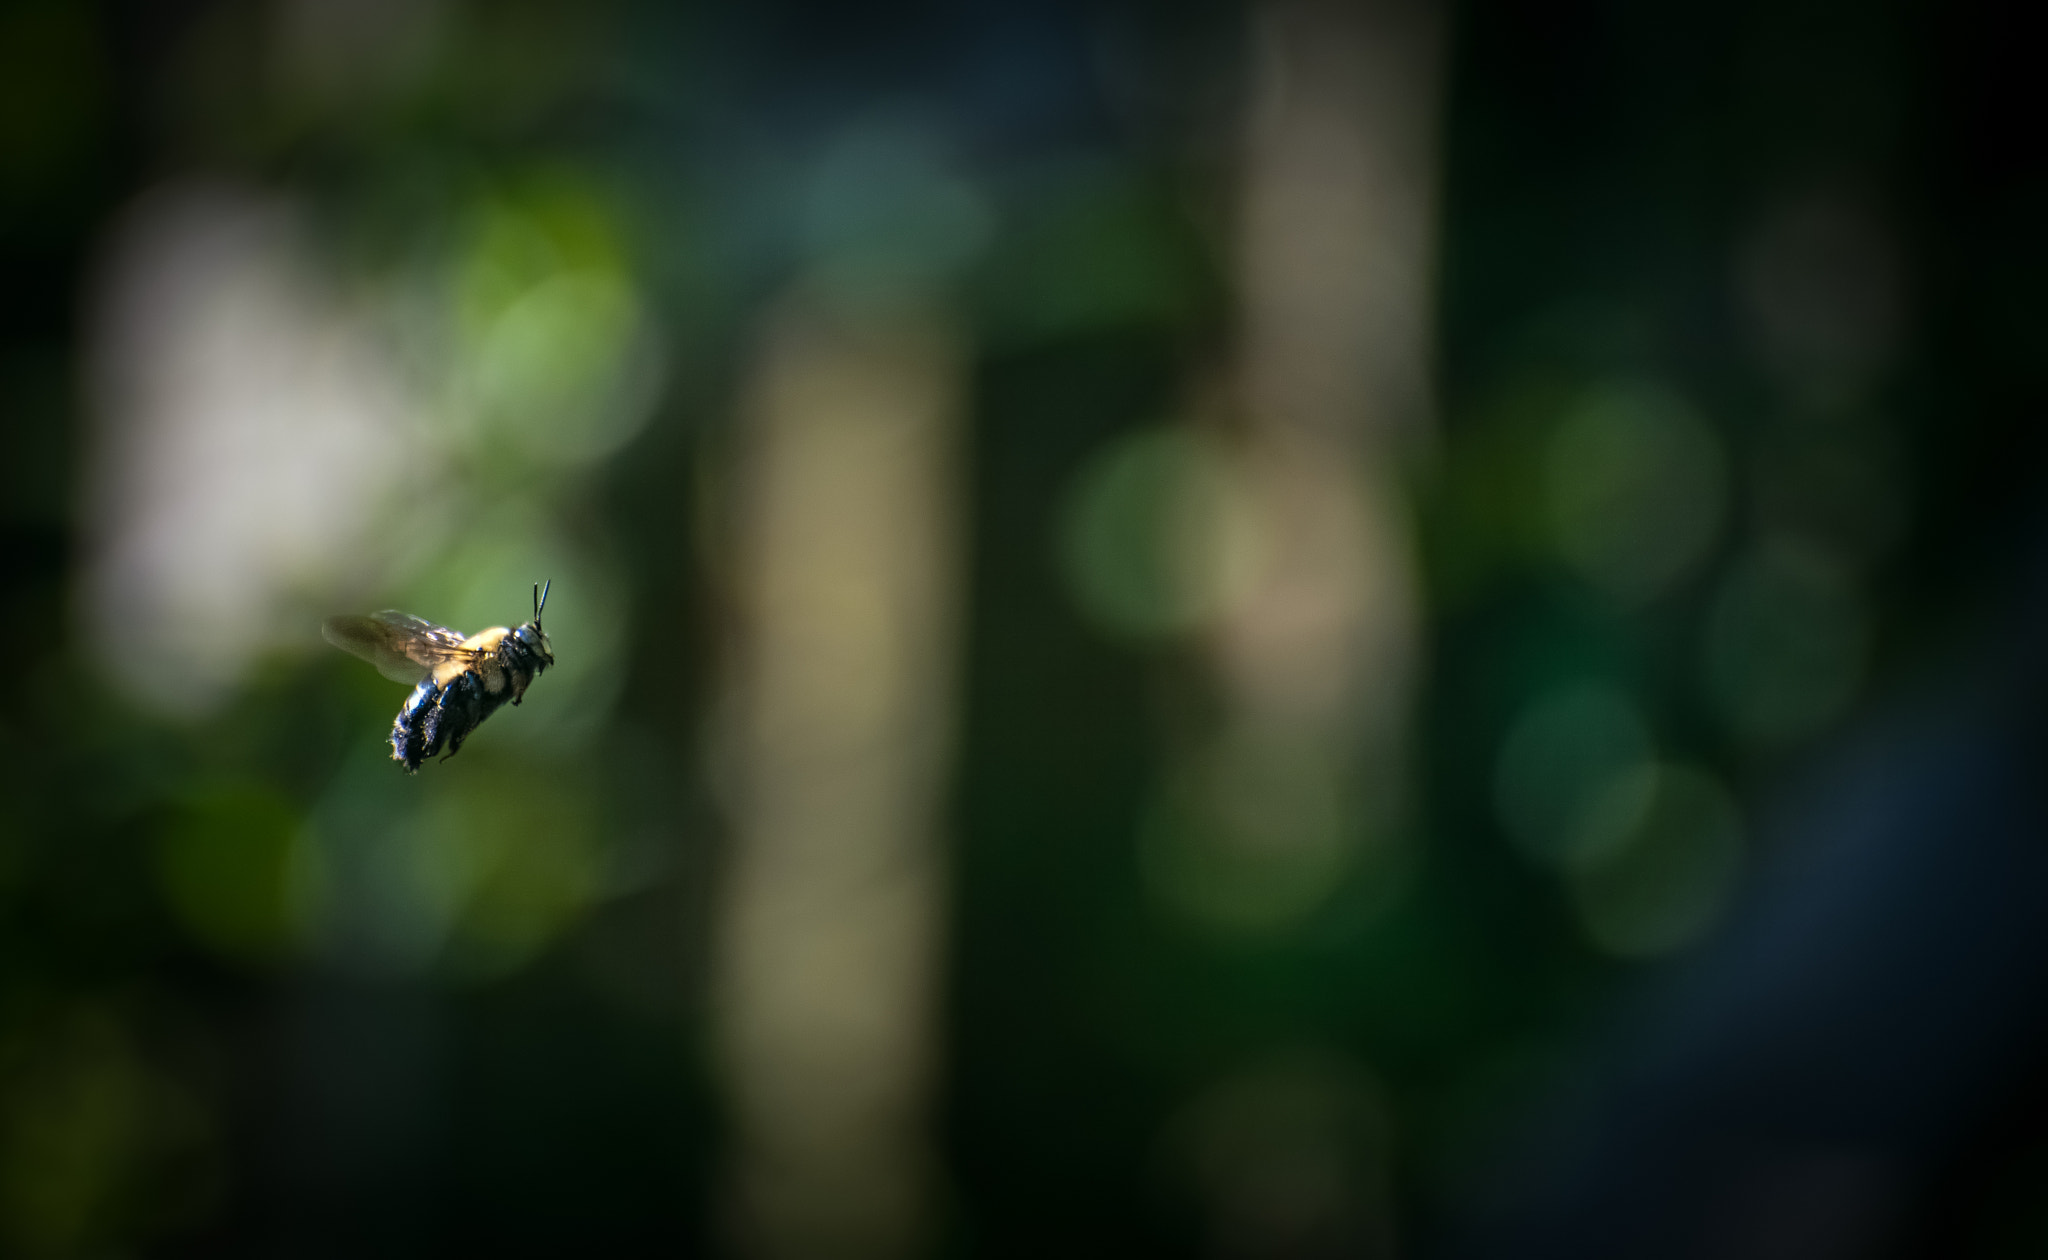 Nikon D810 + Nikon AF-S Nikkor 70-300mm F4.5-5.6G VR sample photo. Flight of a bumblebee photography